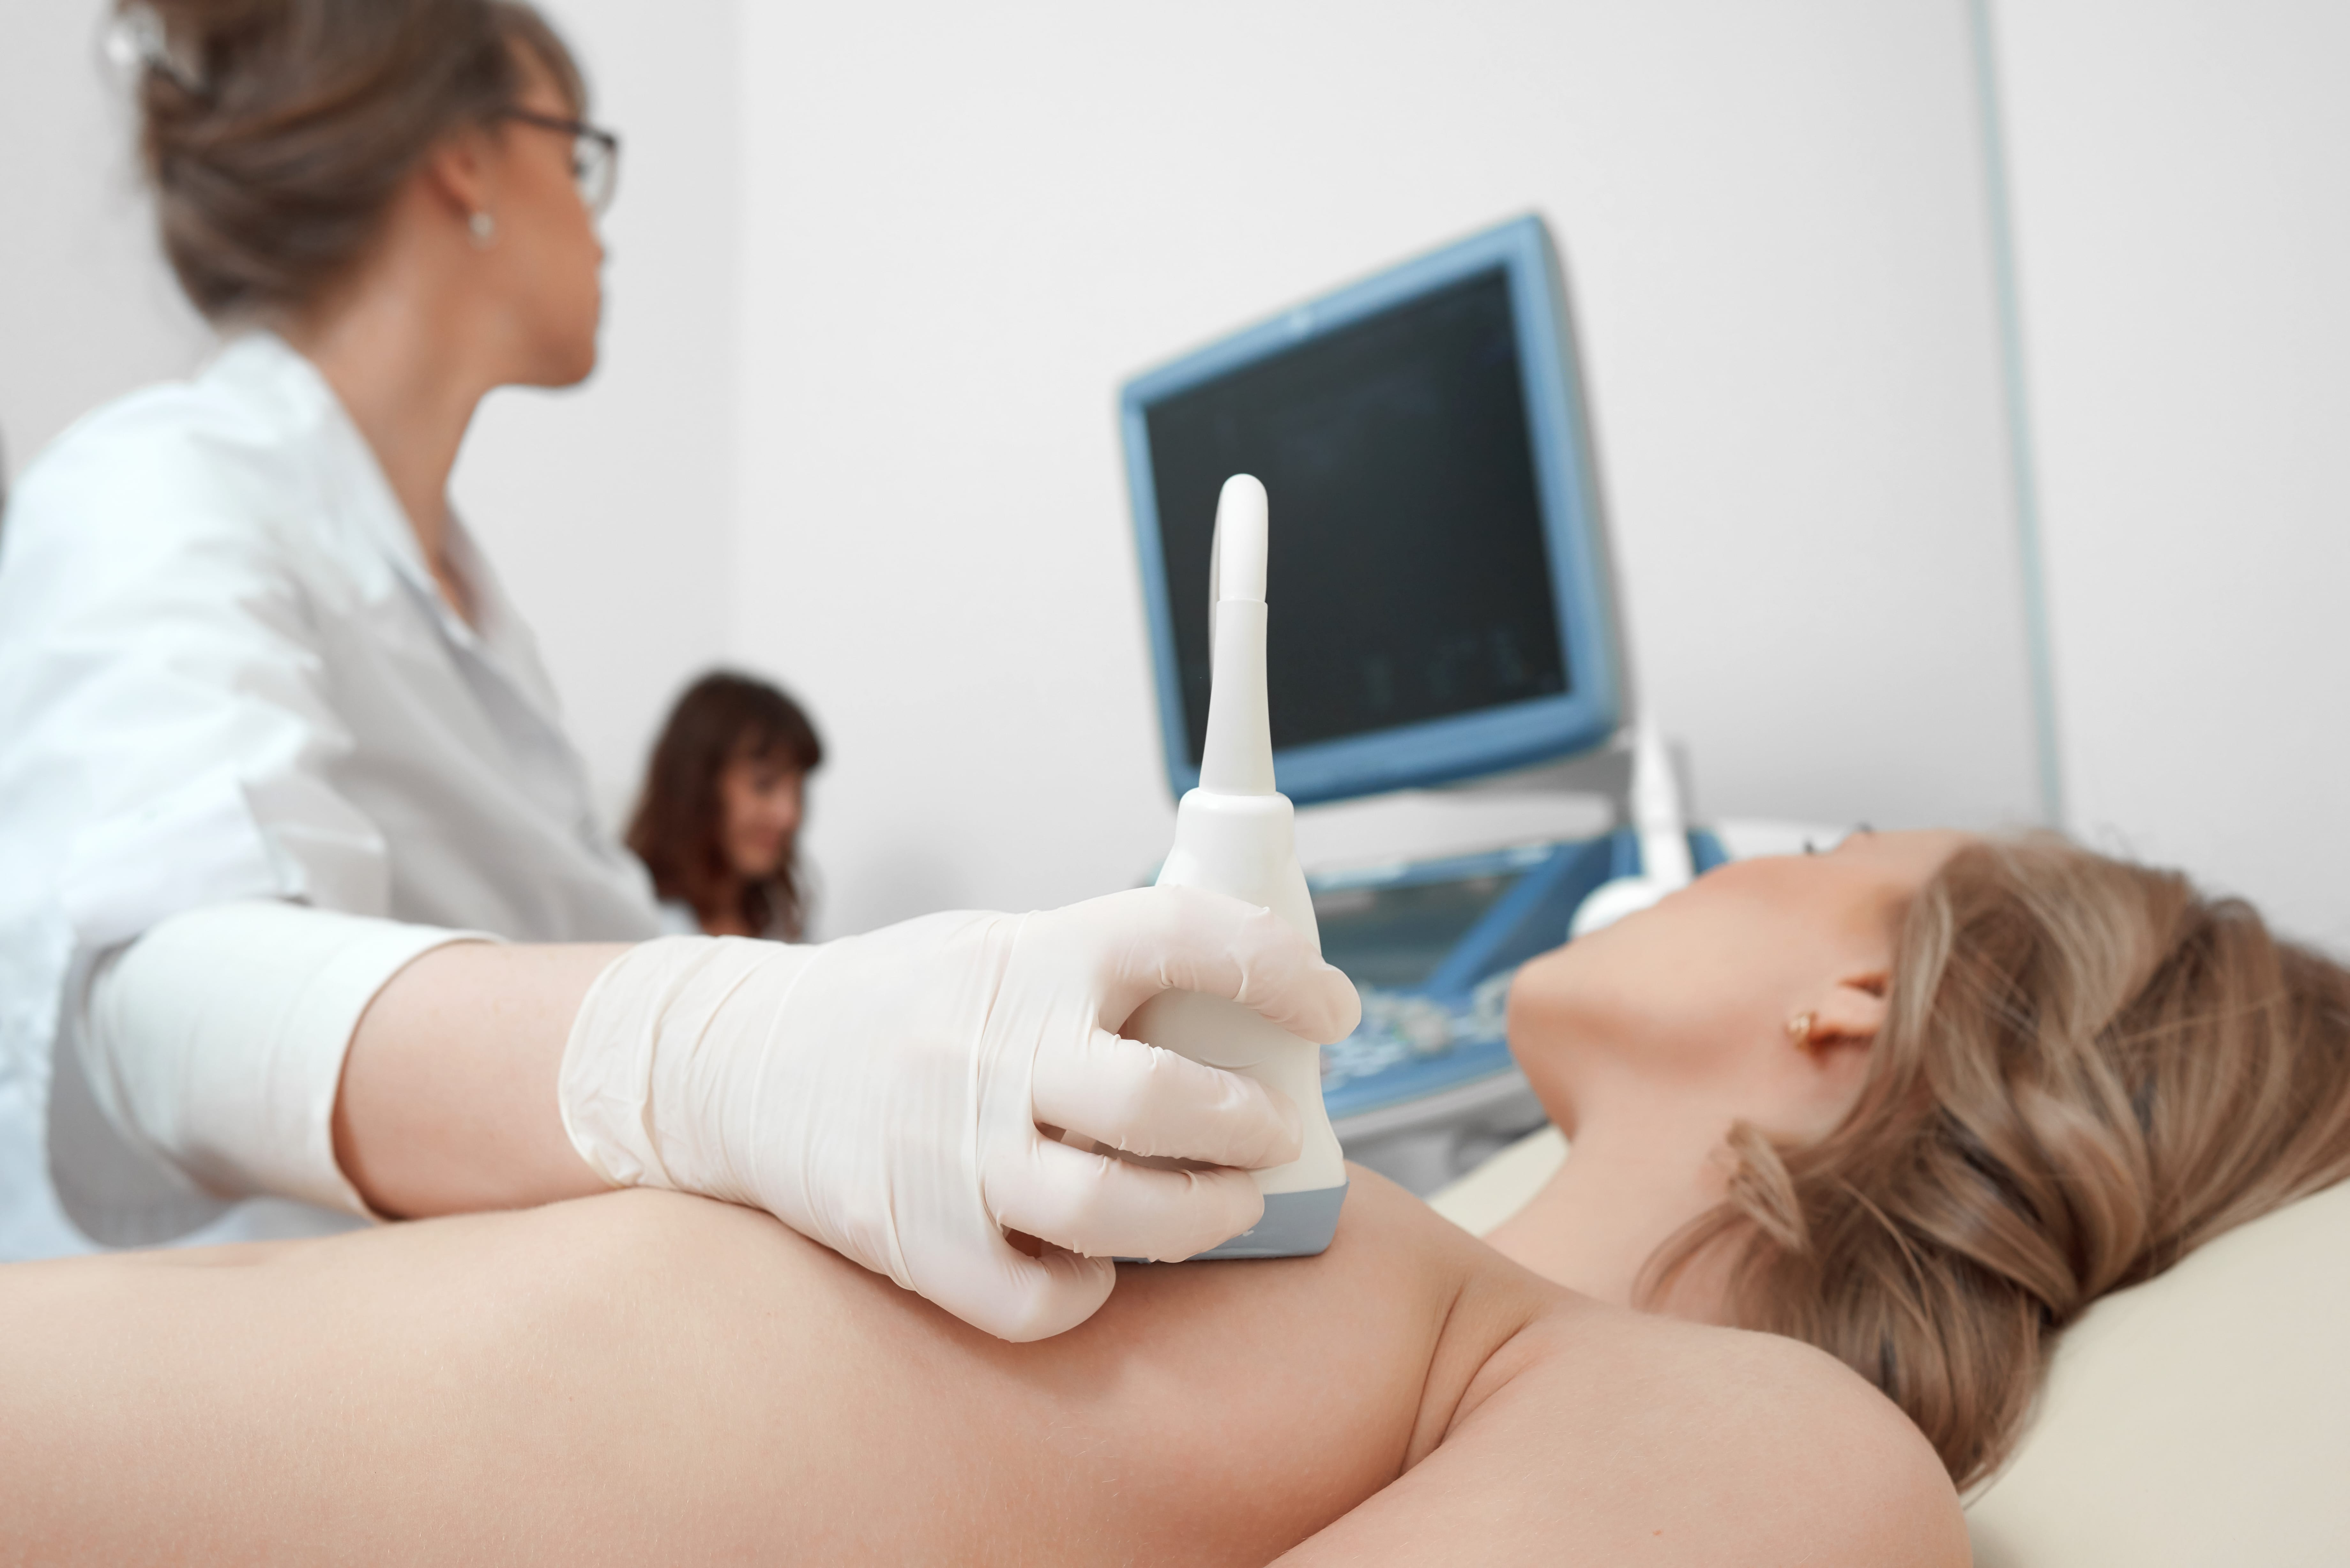 Po ukończeniu 30 lat, badanie ultrasonograficzne piersi powinny być przeprowadzane regularnie.